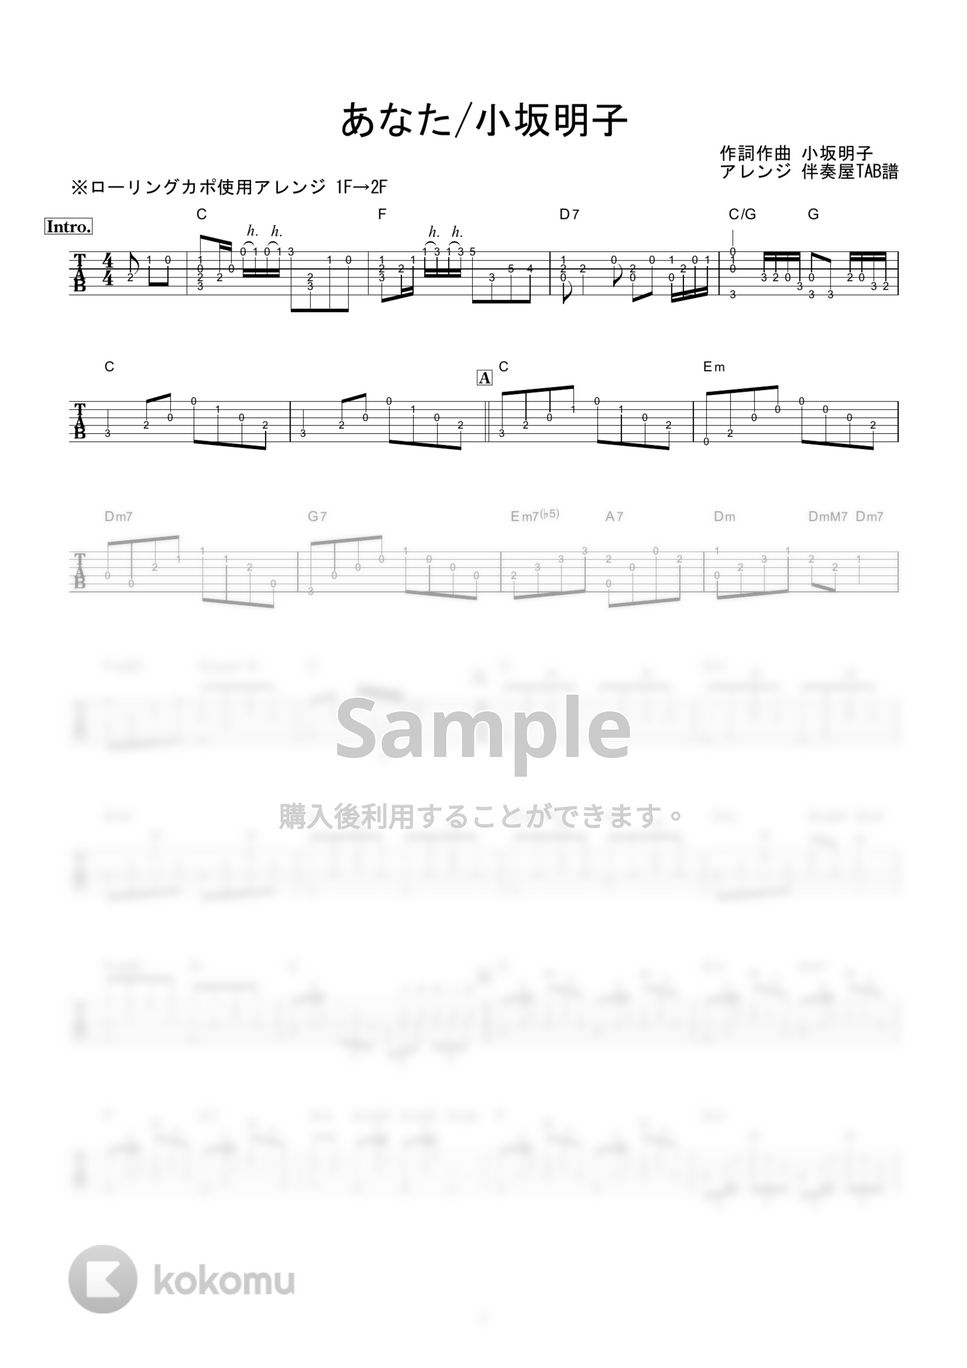 小坂明子 - あなた (ギター伴奏/イントロ・間奏ソロギター) by 伴奏屋TAB譜